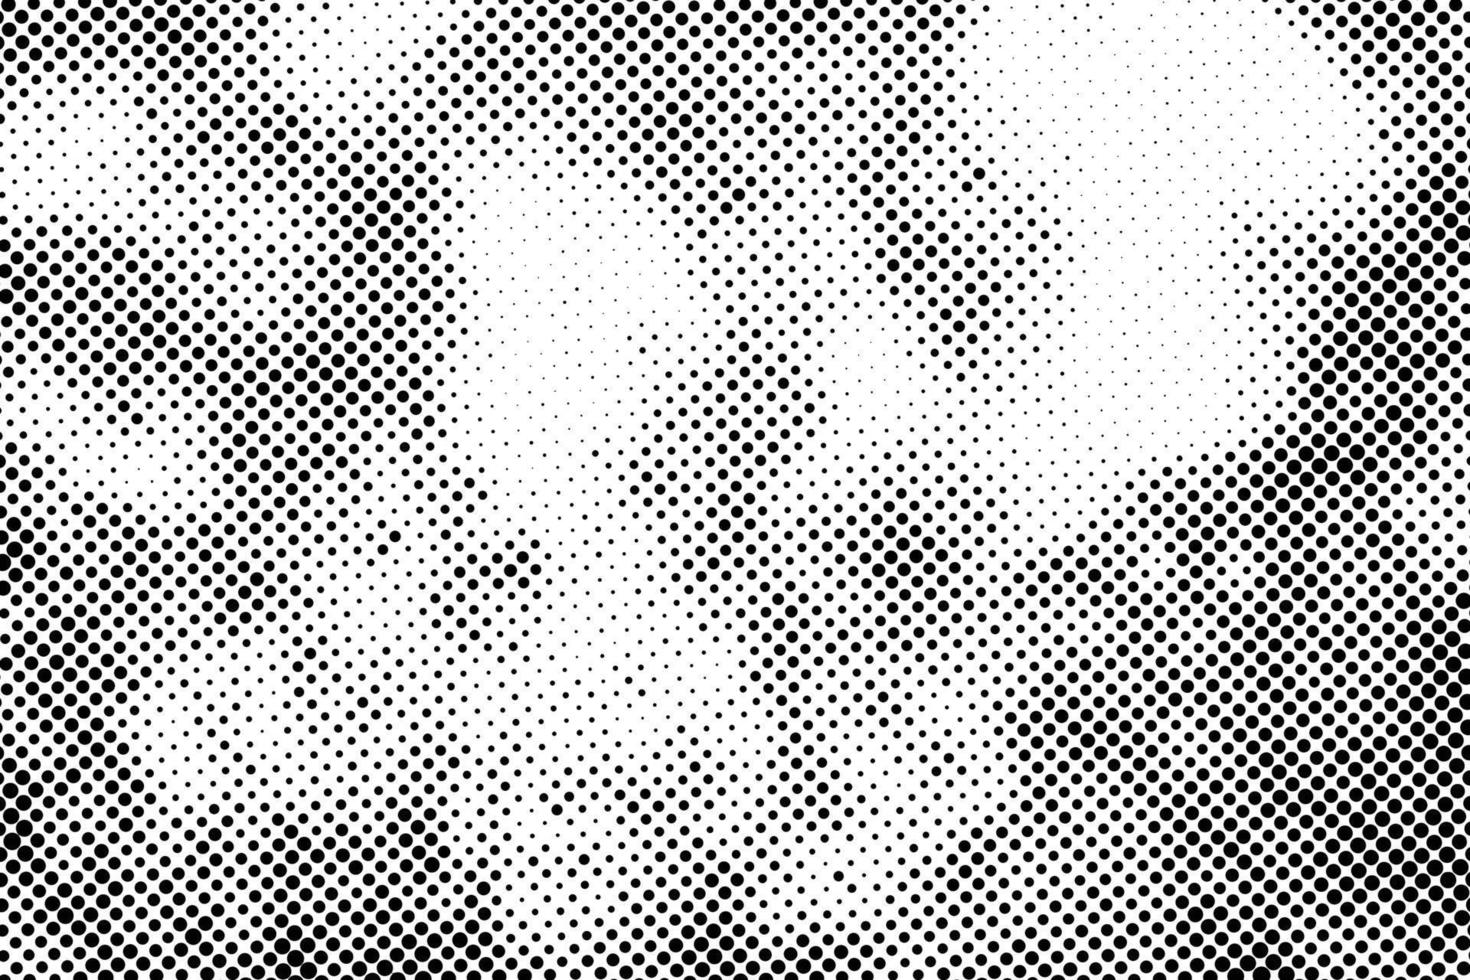 vektor svart prickar mönster. halvton textur pixelat på vit bakgrund.